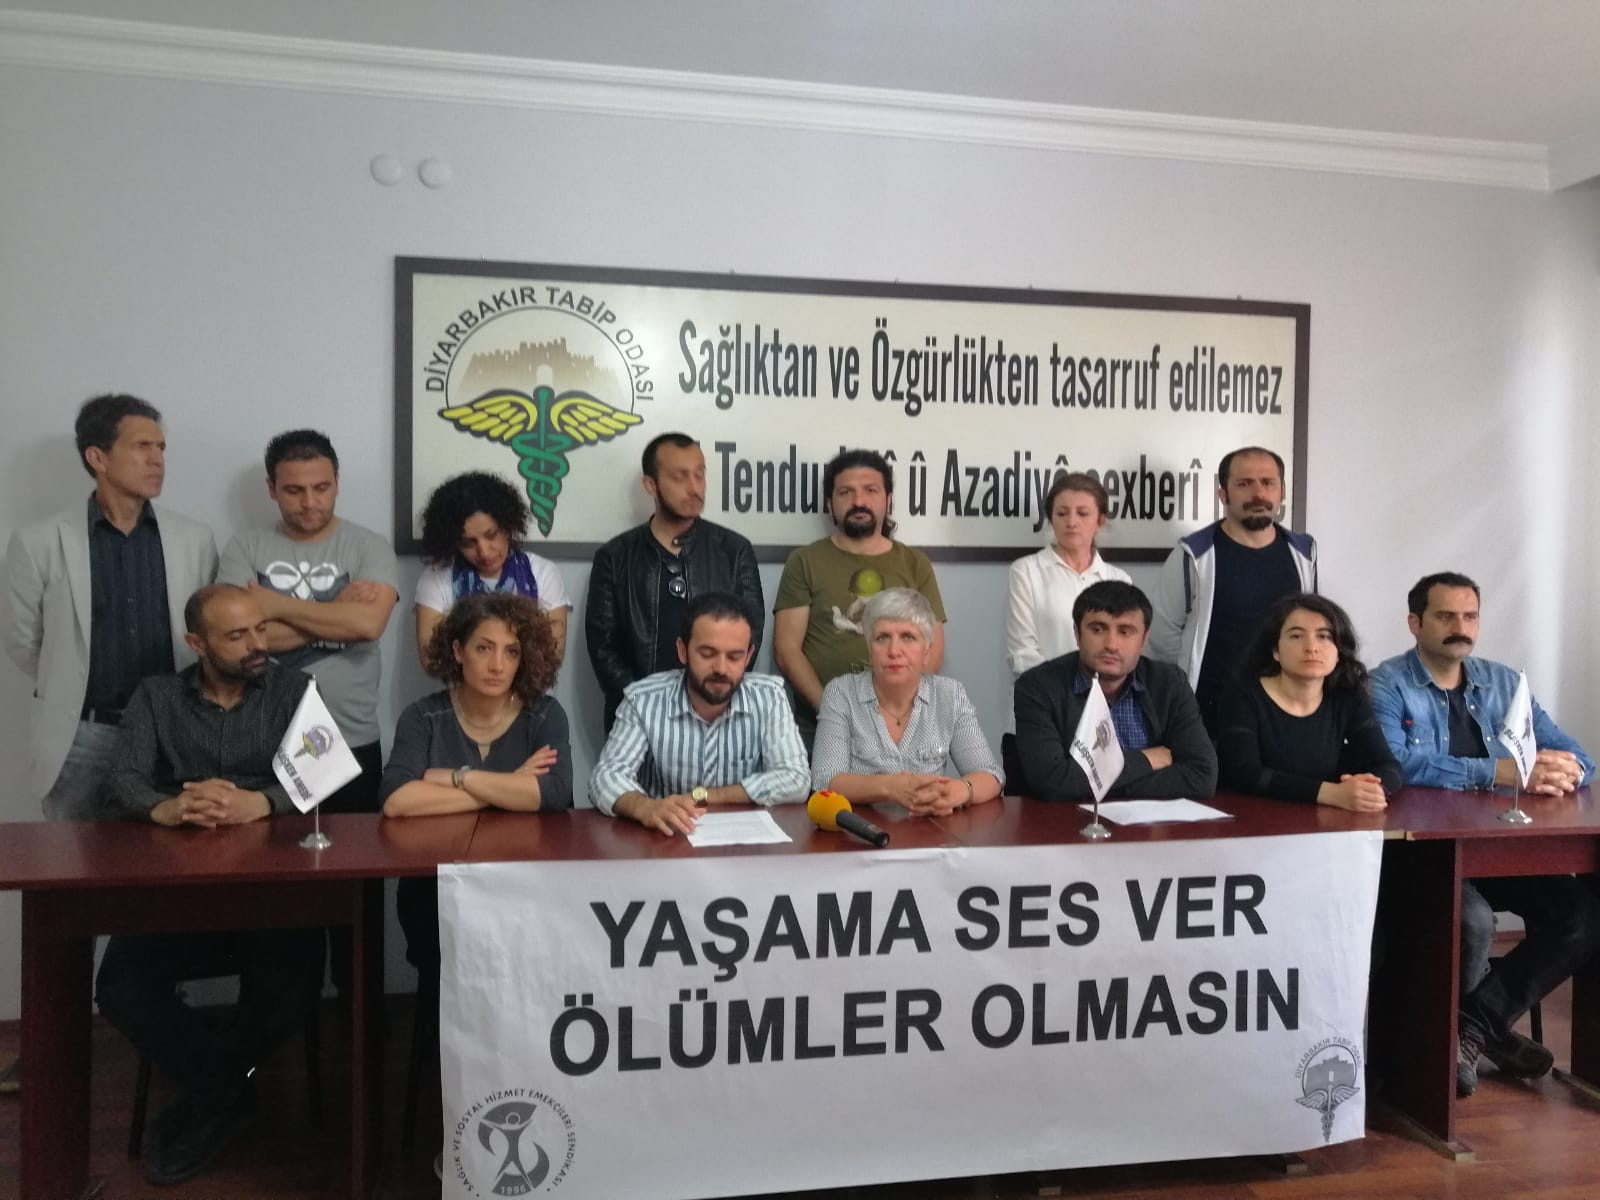 Diyarbakır Şubemiz ve Diyarbakır Tabip Odası: Devam Eden Açlık Grevleri Yaşamı Tehdit Edici Boyutlara Ulaşmıştır!